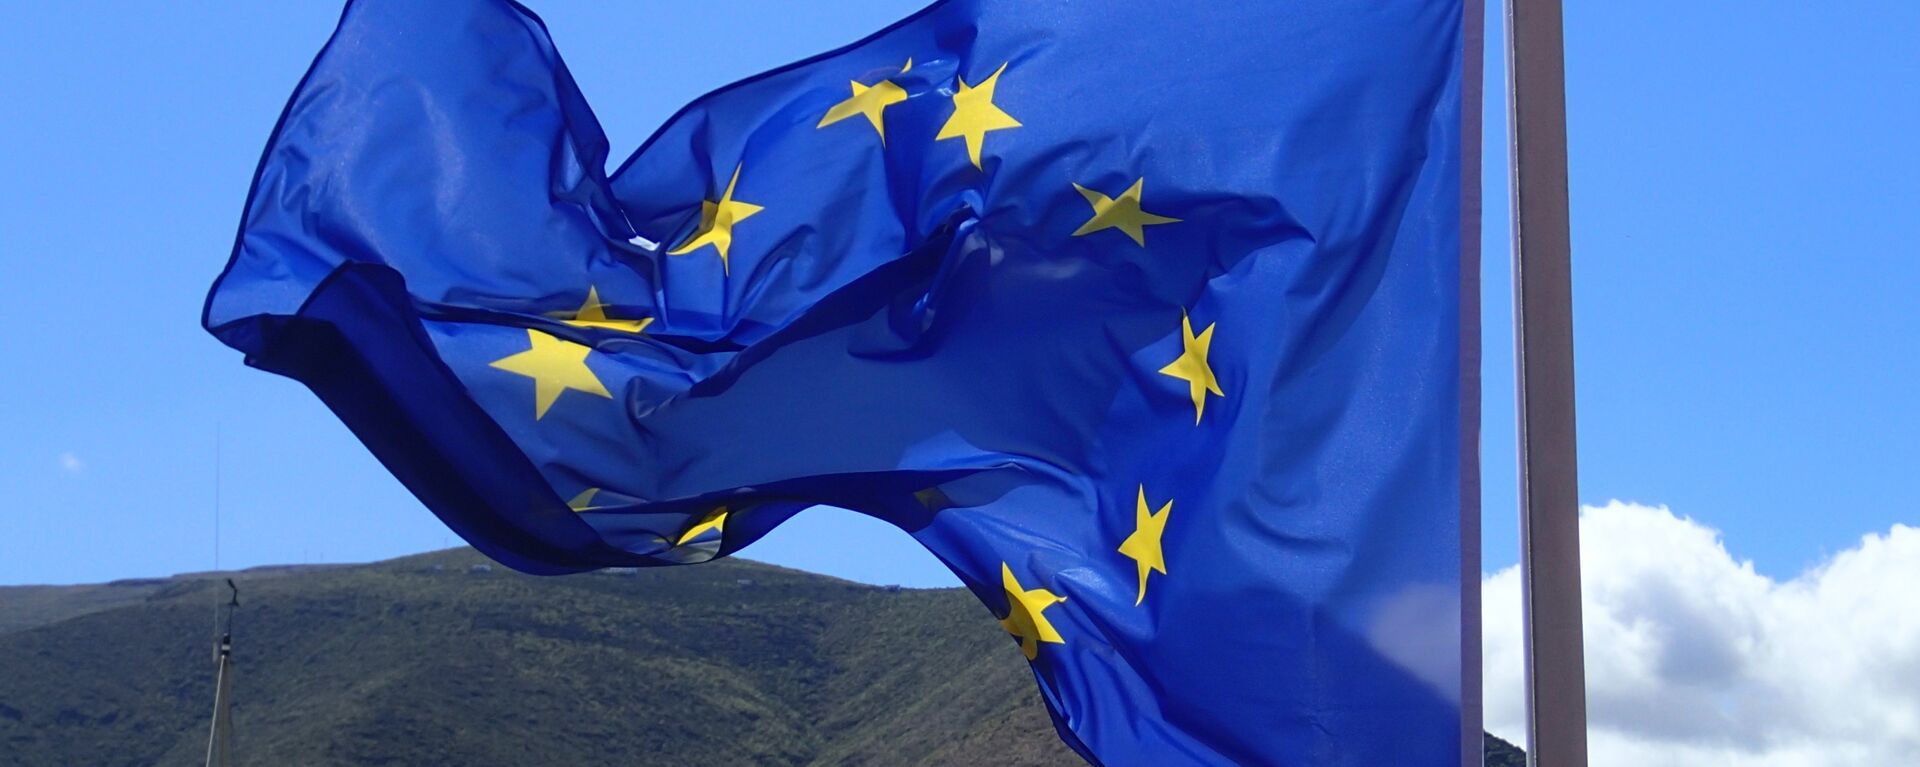 Bandera de la Unión Europea - Sputnik Mundo, 1920, 20.01.2021